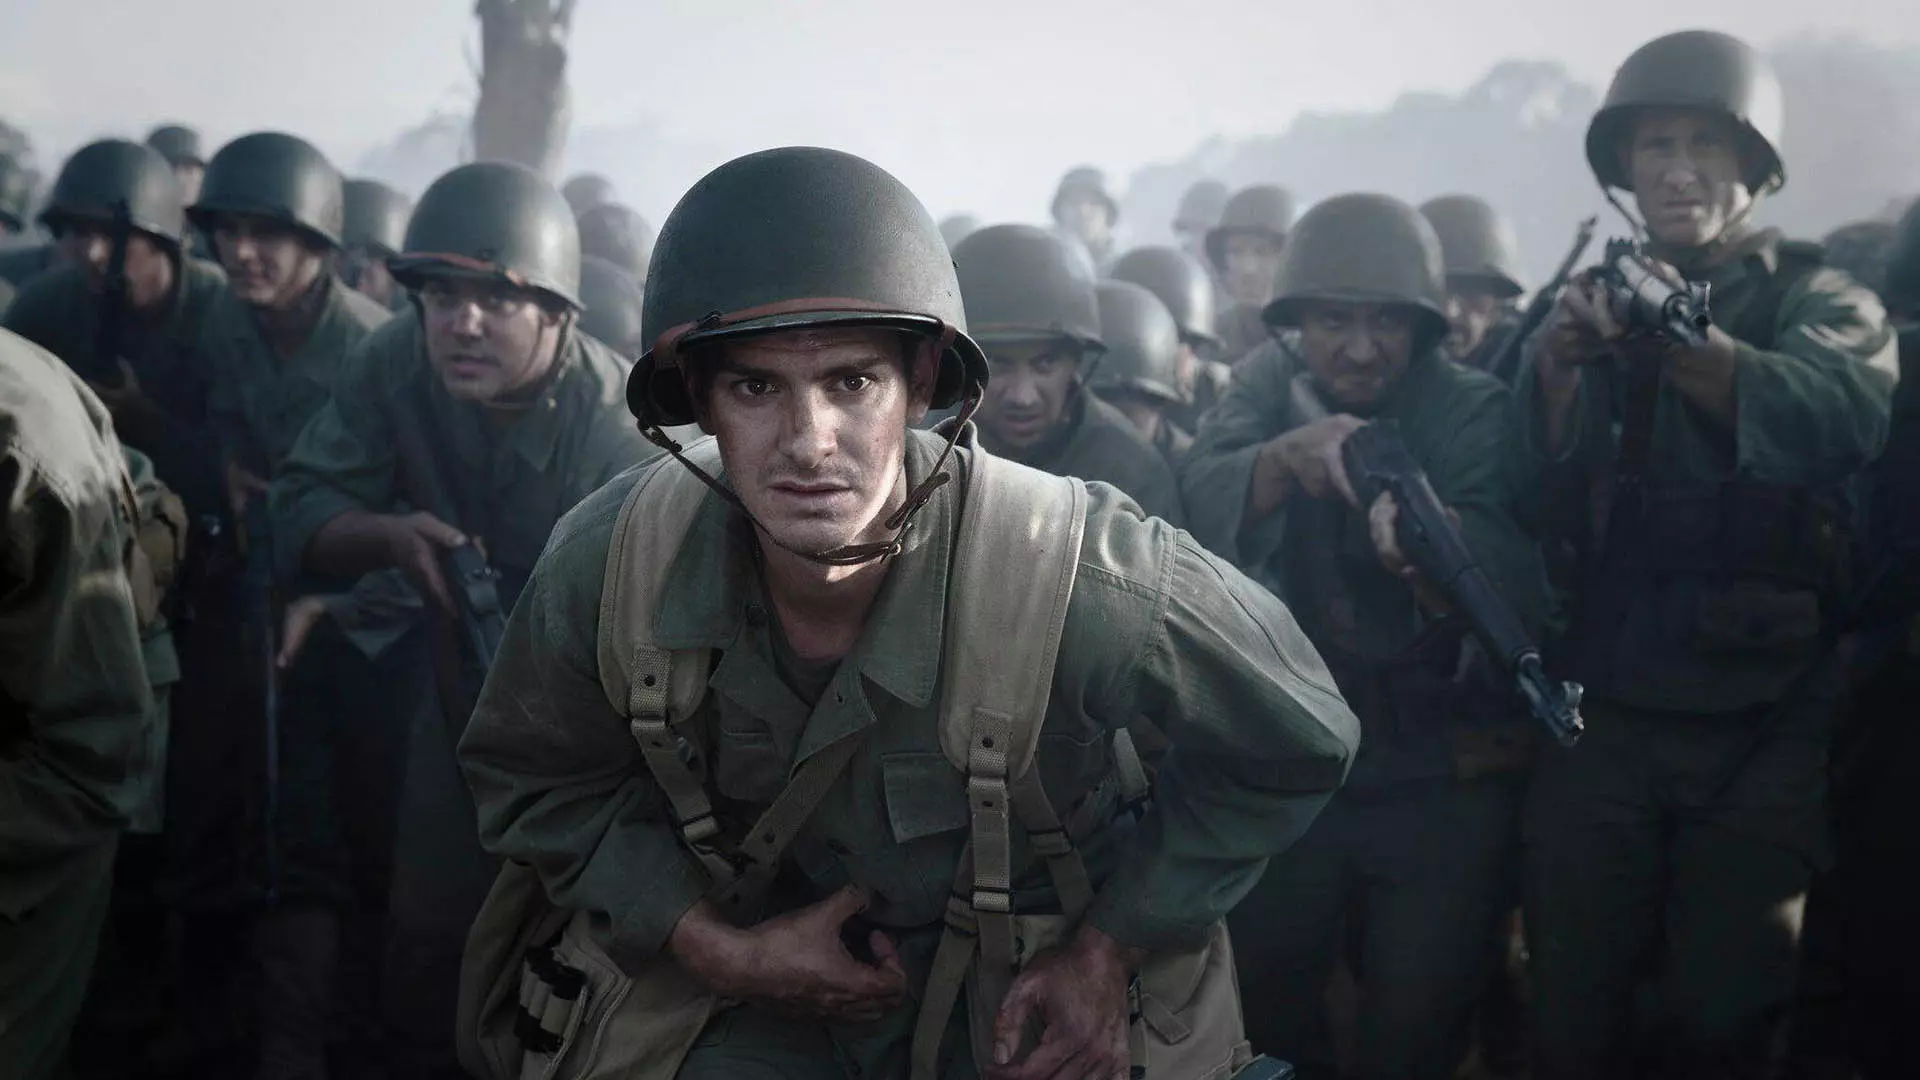 اندرو گارفیلد در لباس نظامی همراه سربازان دیگر در فیلم Hacksaw Ridge